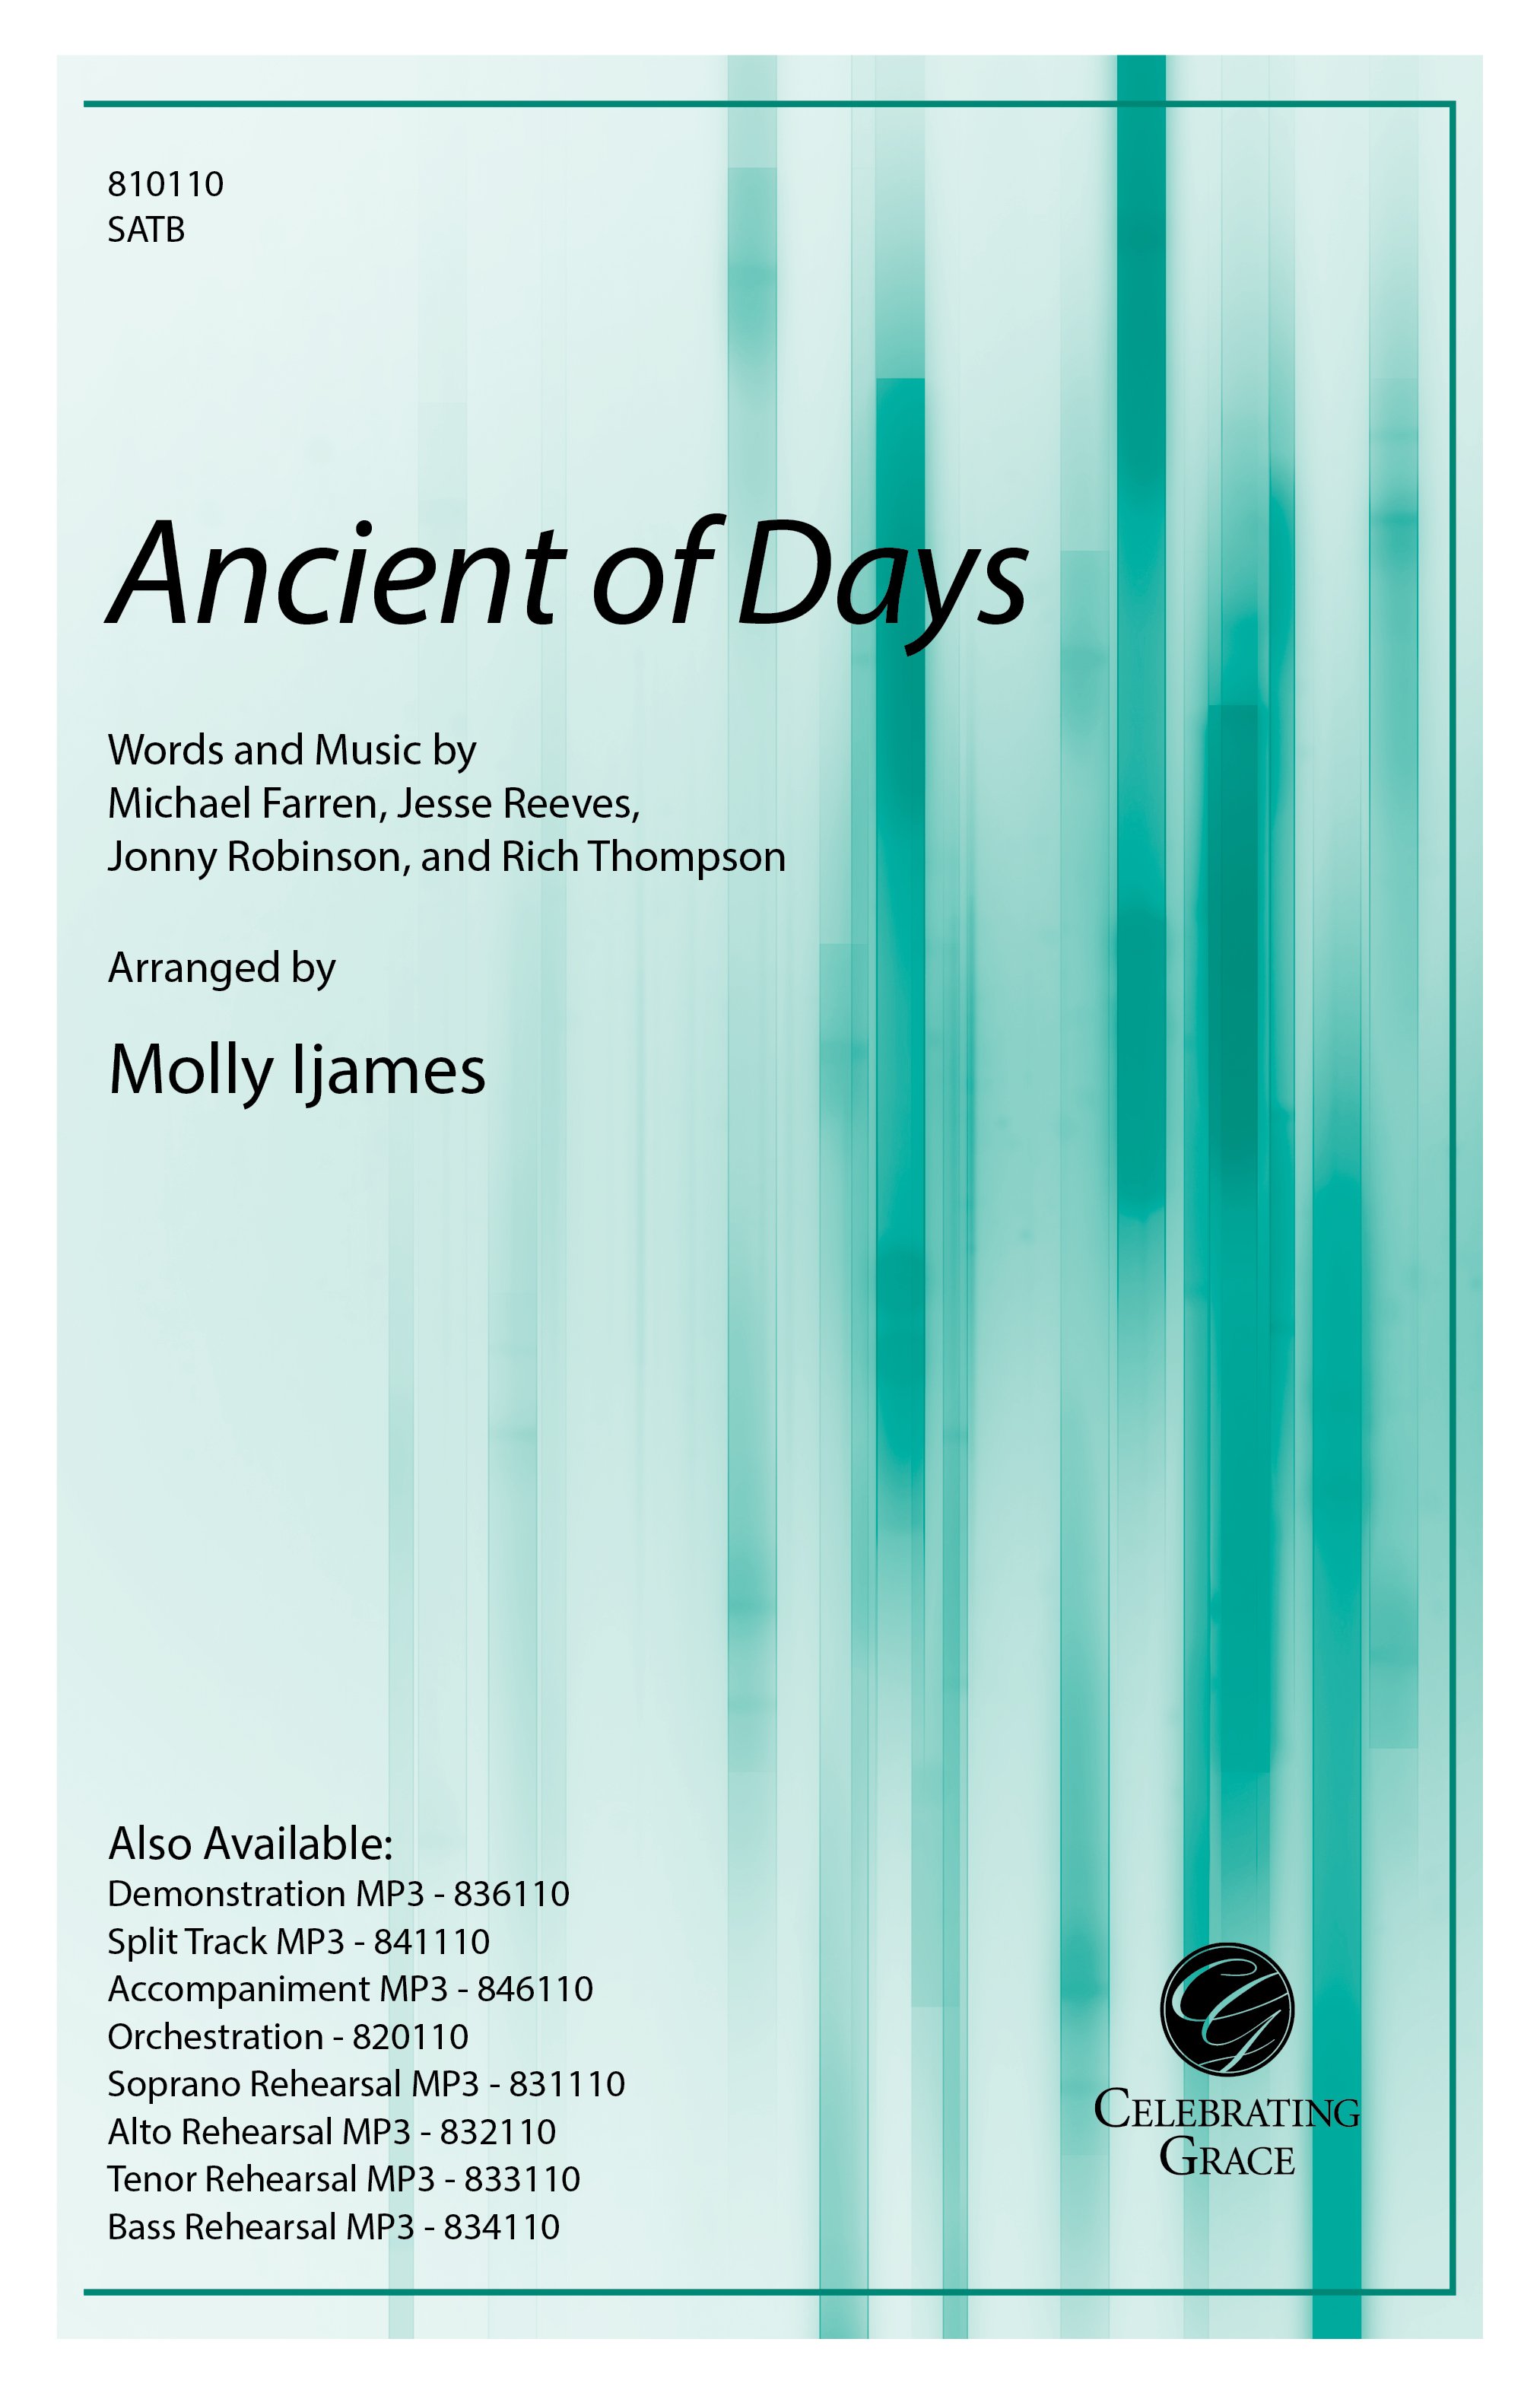 Ancient of Days church choir sheet music cover